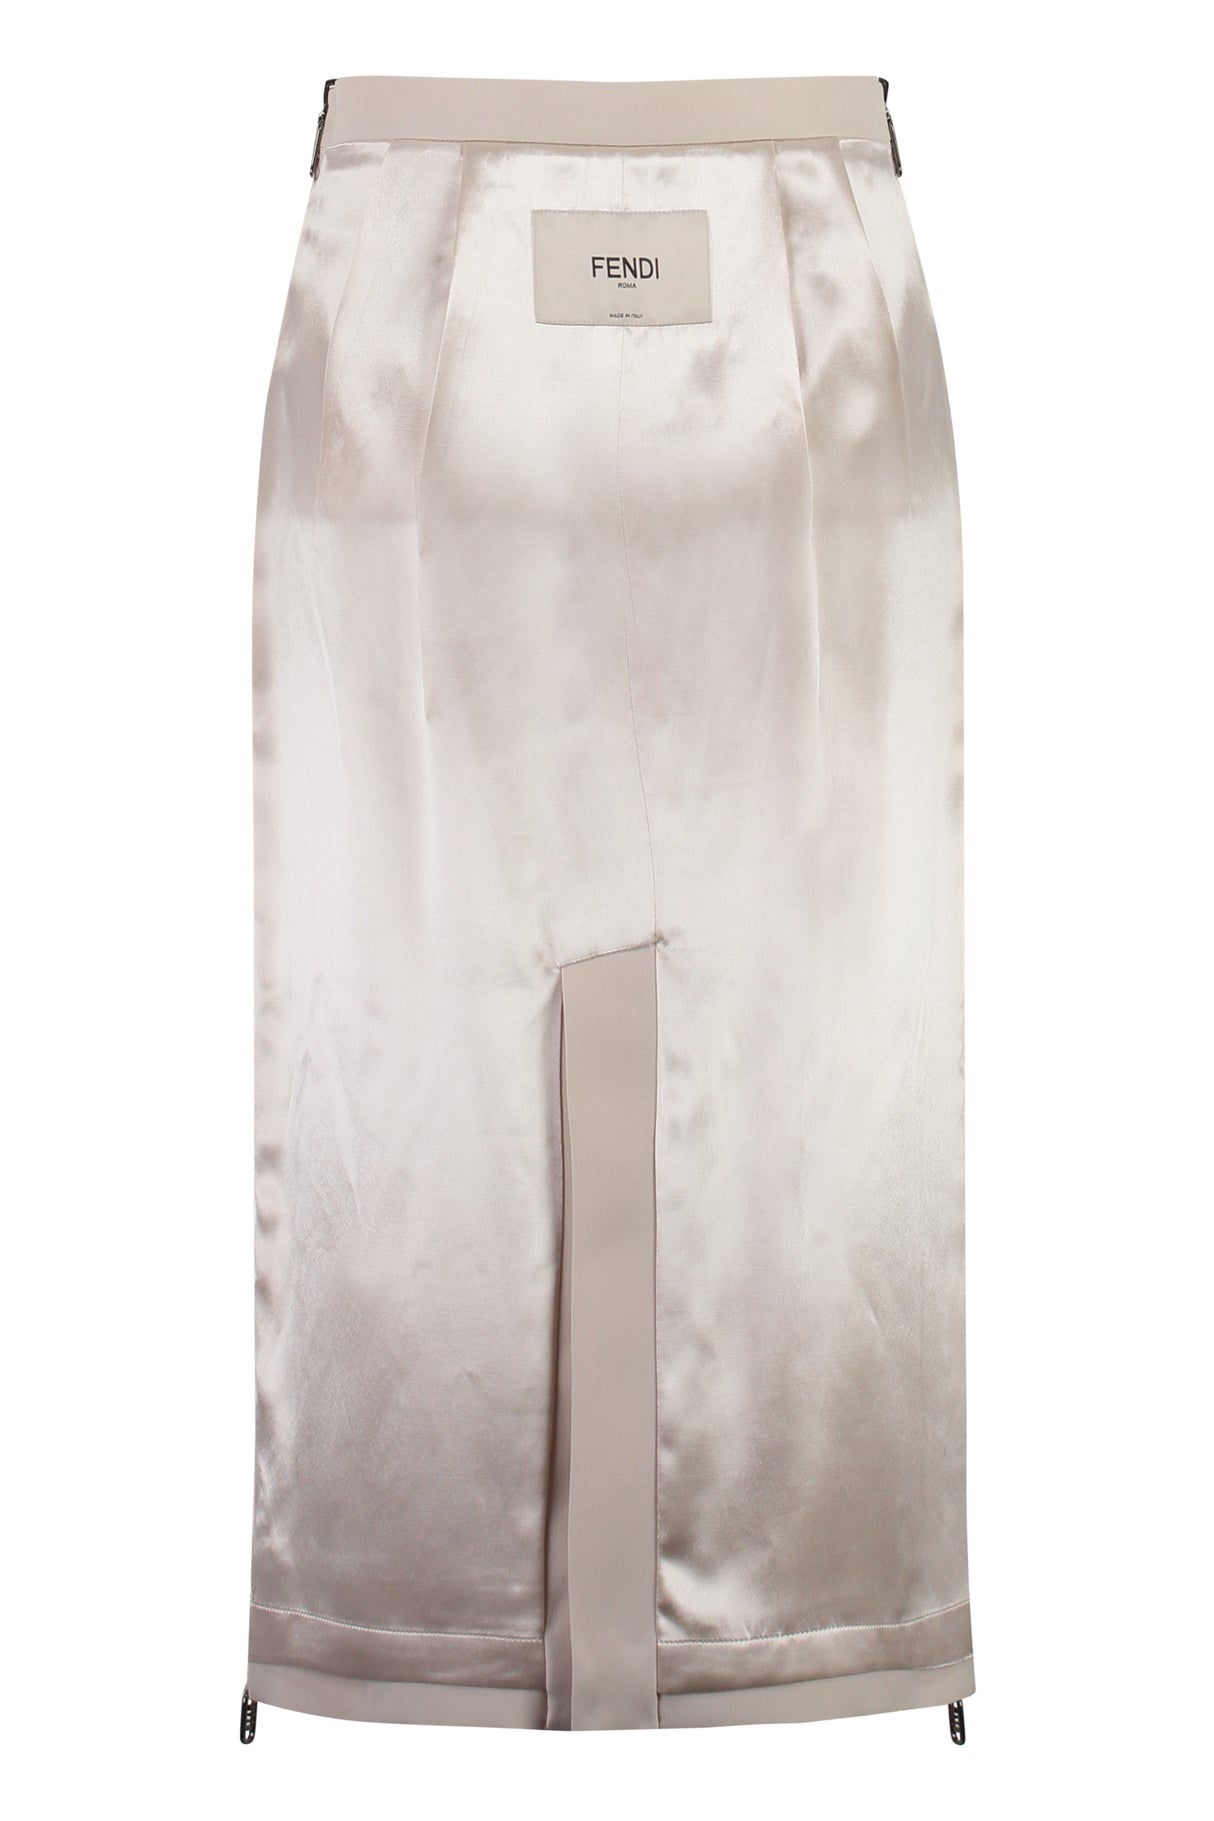 FENDI Ivory Extendable Pencil Skirt for Women